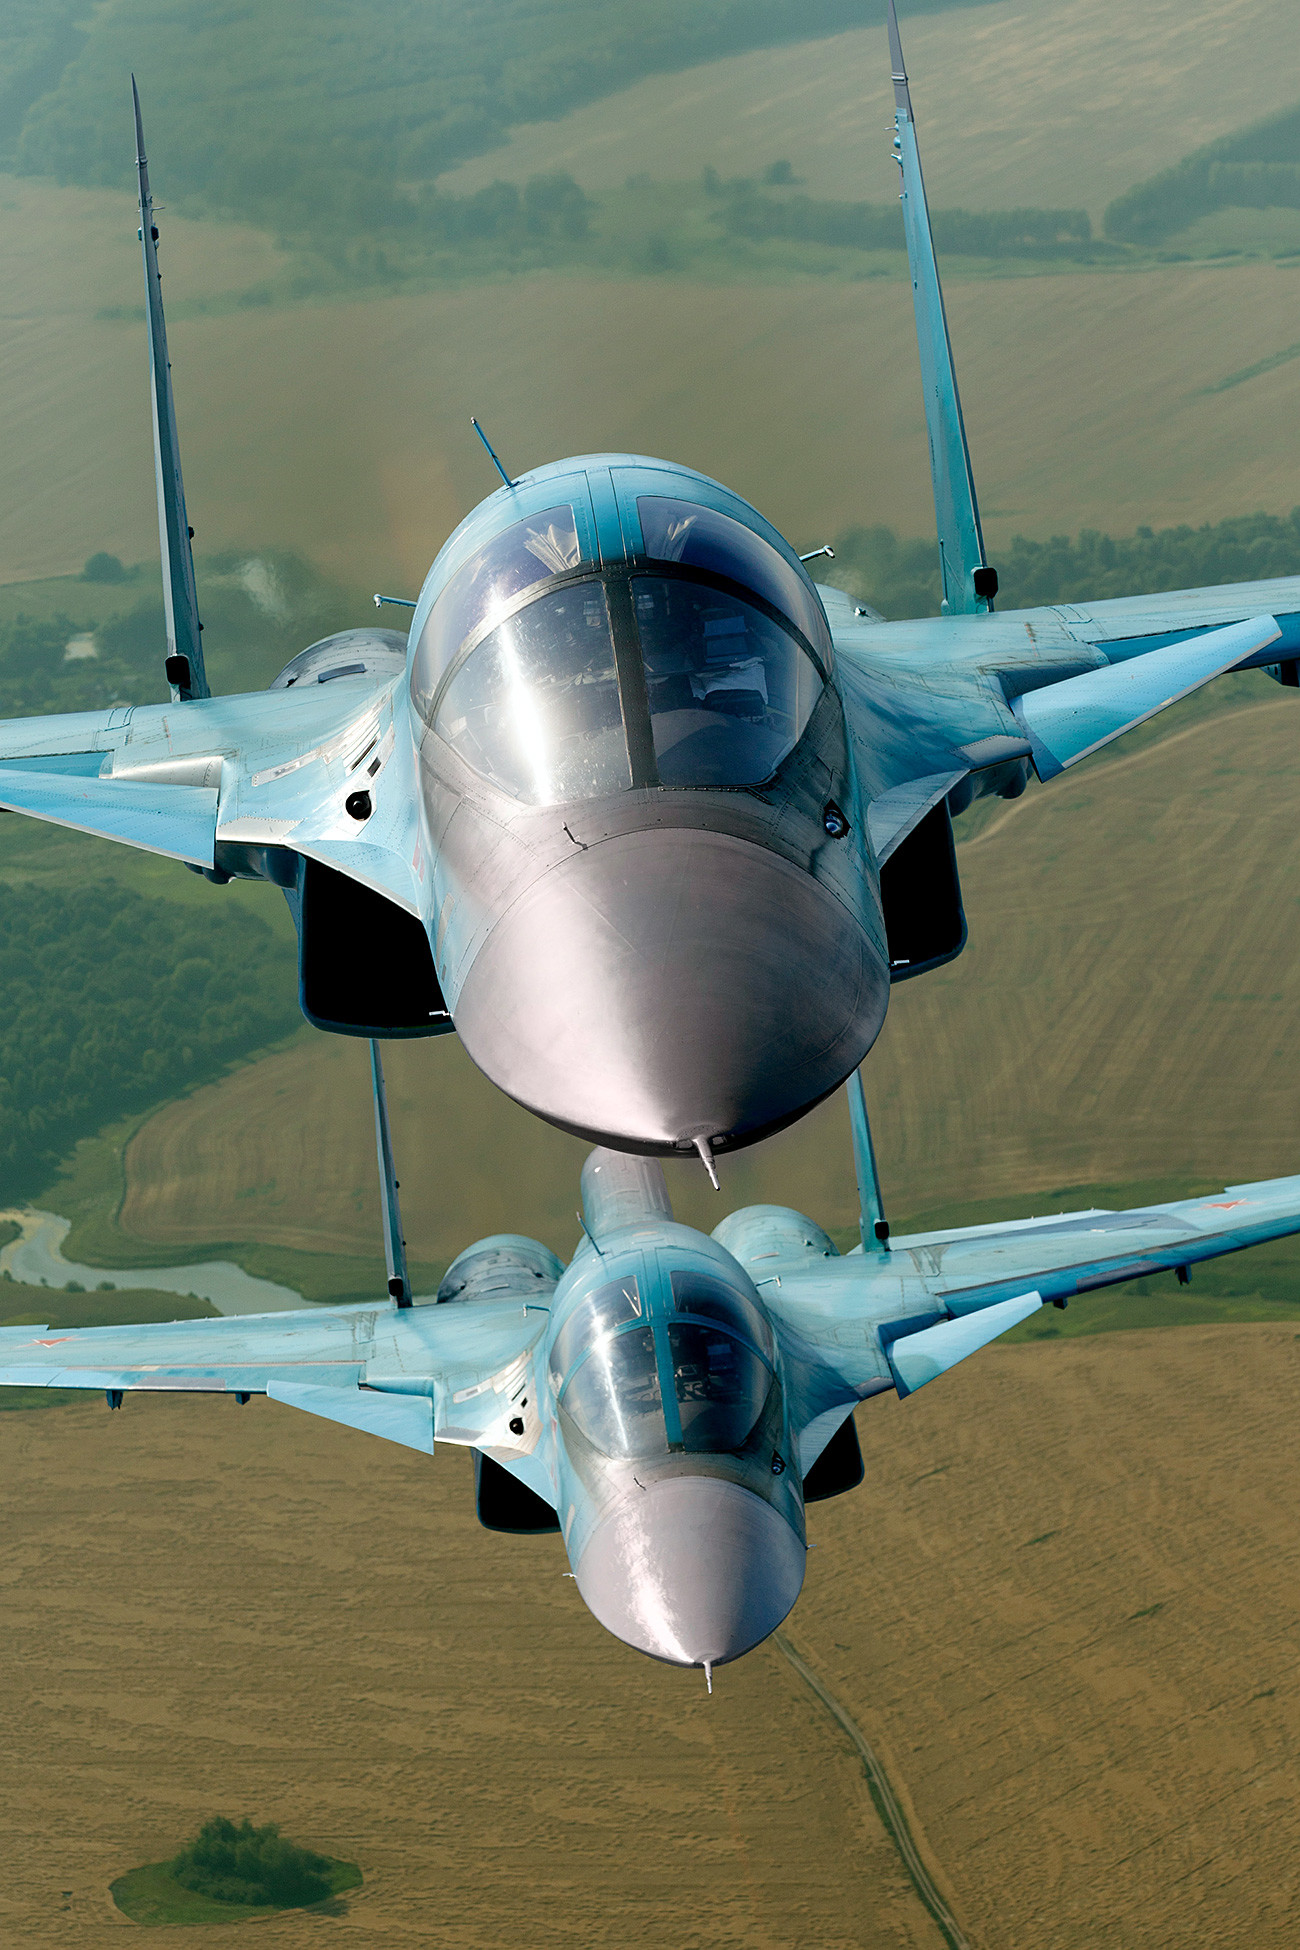 El Su-34 puede volar 7.000 km sin repostar y acercarse a su objetivo, destruyendo todo a su paso.